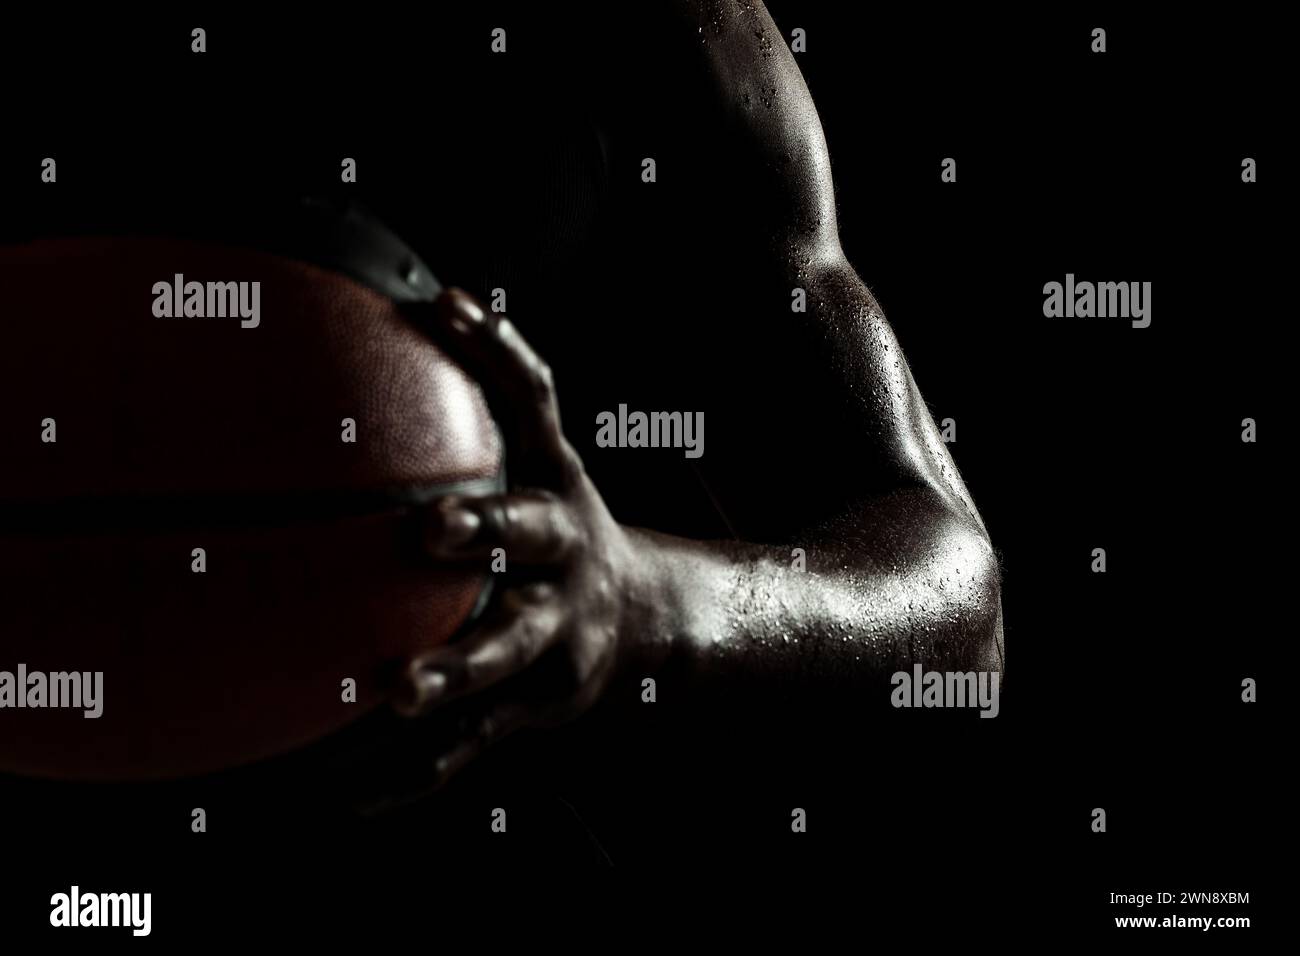 Basketballspieler hält einen Ball vor schwarzem Hintergrund. Abstrakter nasser männlicher Körper eines afroamerikanischen Mannes. Muskulöse Person Seitensilhouette. Stockfoto